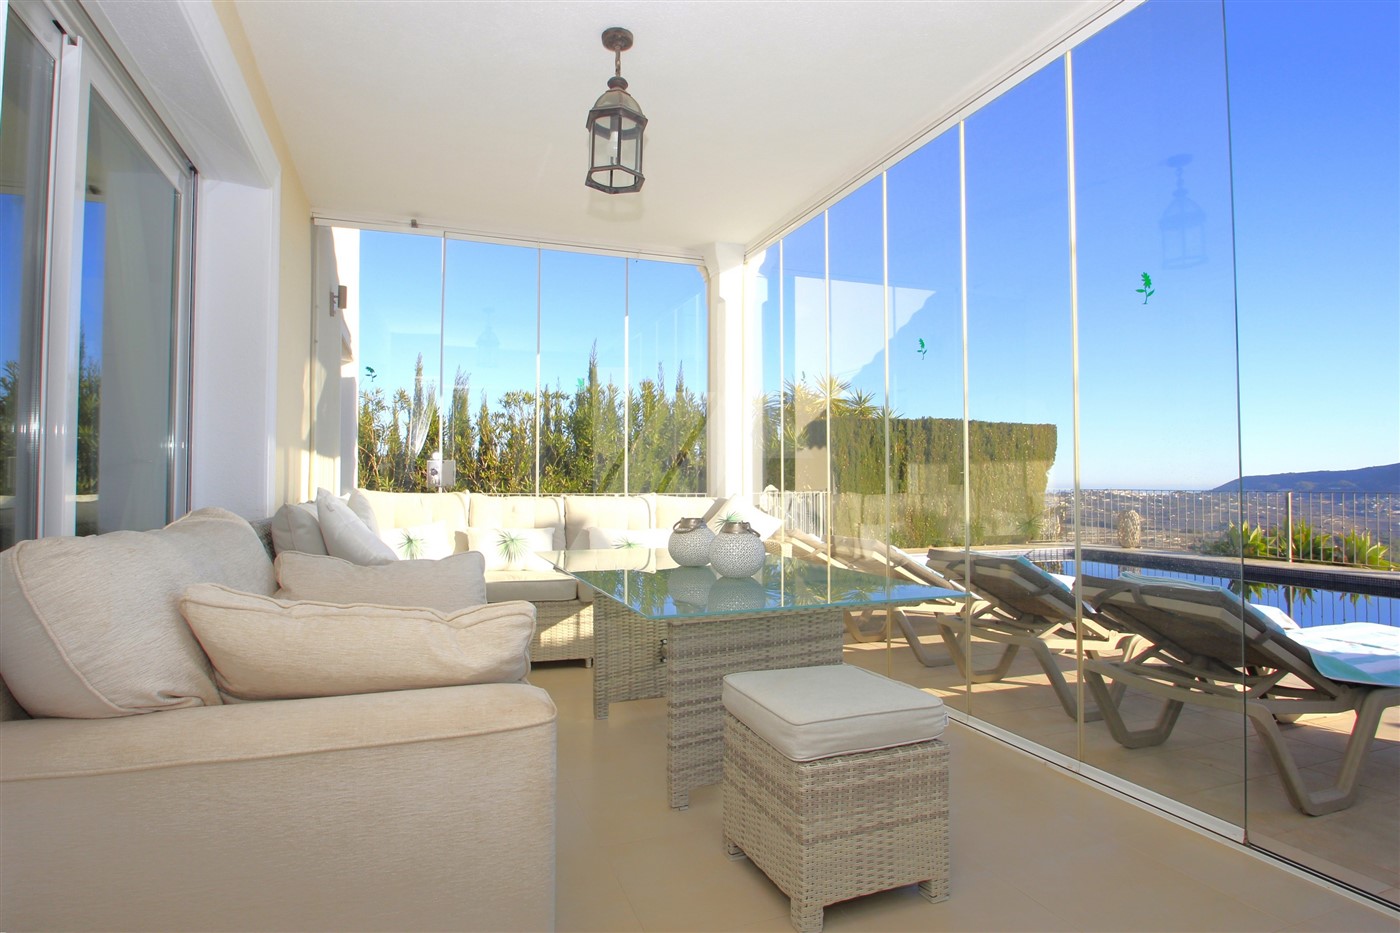 Fantastique villa avec vue sur la mer à vendre à Moraira, Costa Blanca.